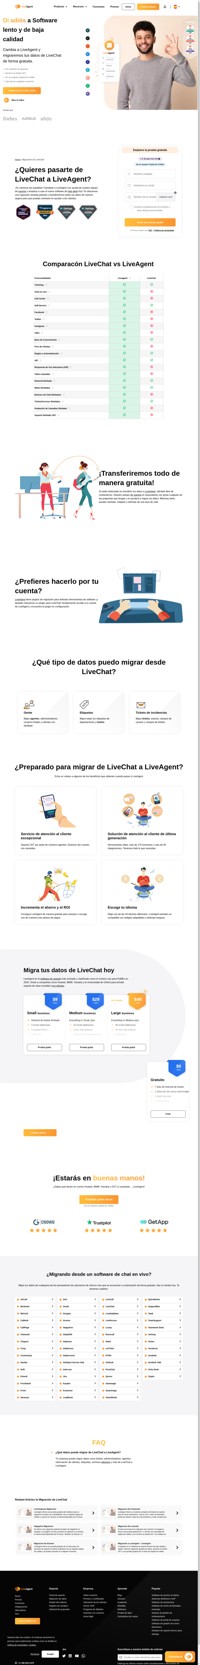 ¿Quieres migrar tus datos de LiveChat a LiveAgent? Haz igual que compañías como Huawei, BMW, Yamaha y O2 para proporcionar soporte de primera clase.